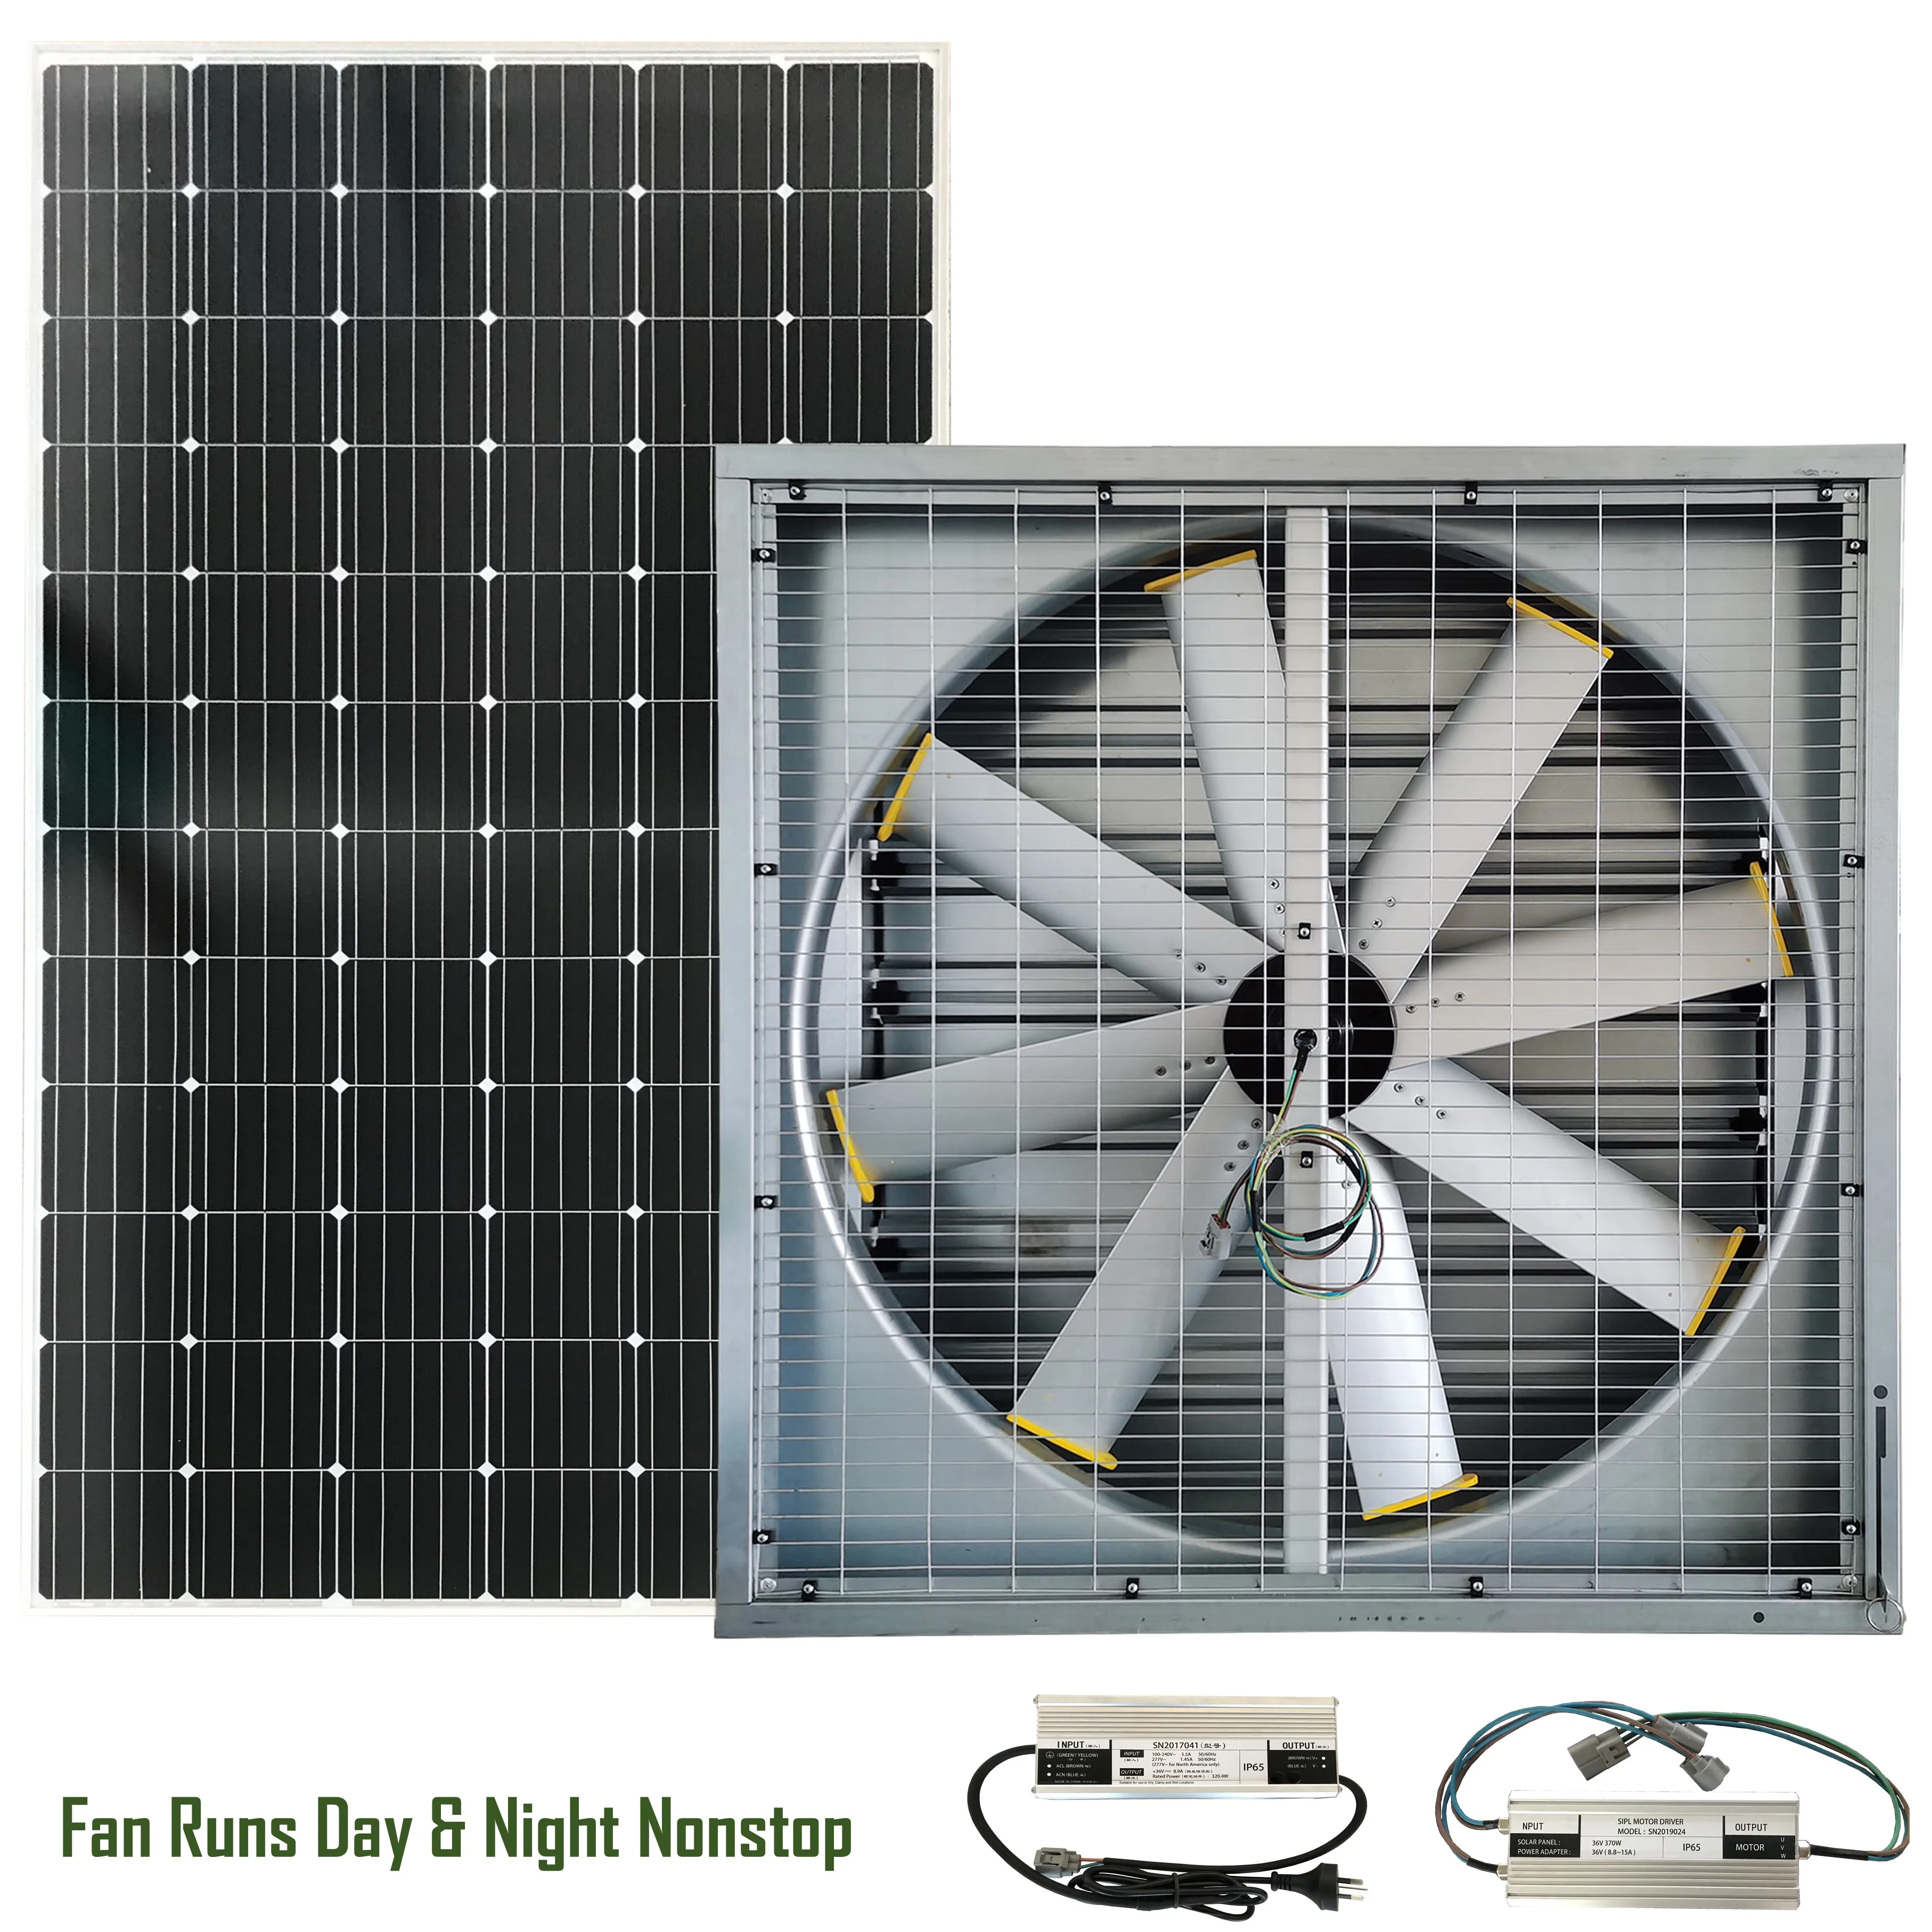 
 Склад 1220 мм настенный вентилятор Солнечный солнечного света Питание DC 36V энергичный сетки резервного копирования, и он имеет высокую эффективность Гибридный извлечения вытяжной вентилятор  